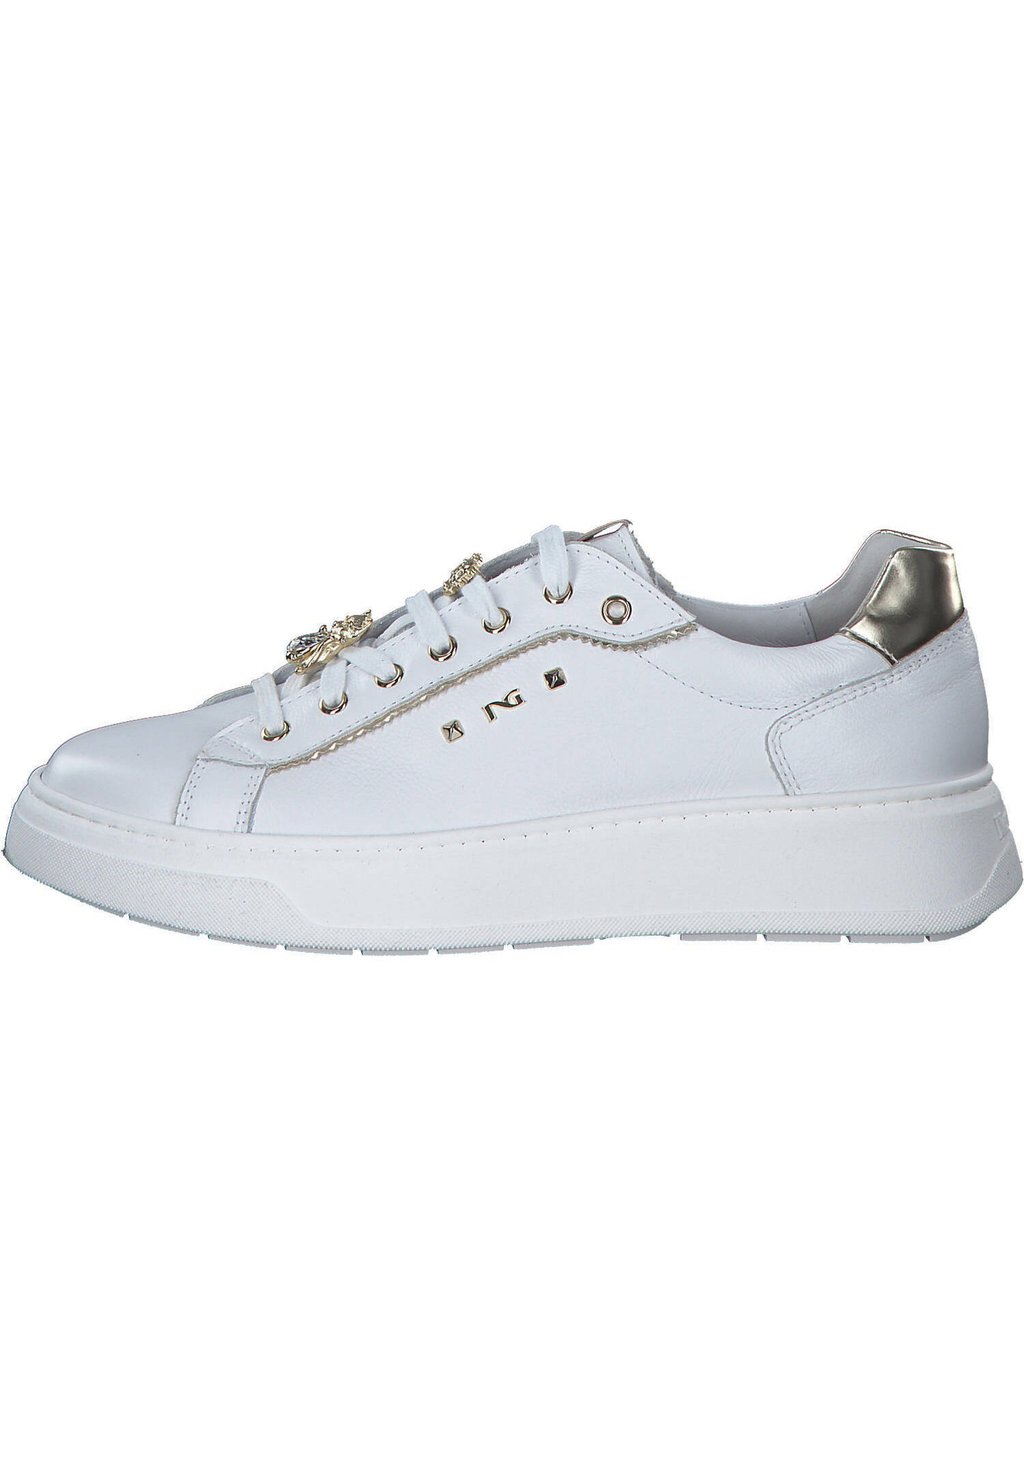 Спортивные туфли на шнуровке E409975D NeroGiardini, цвет bianco mirror